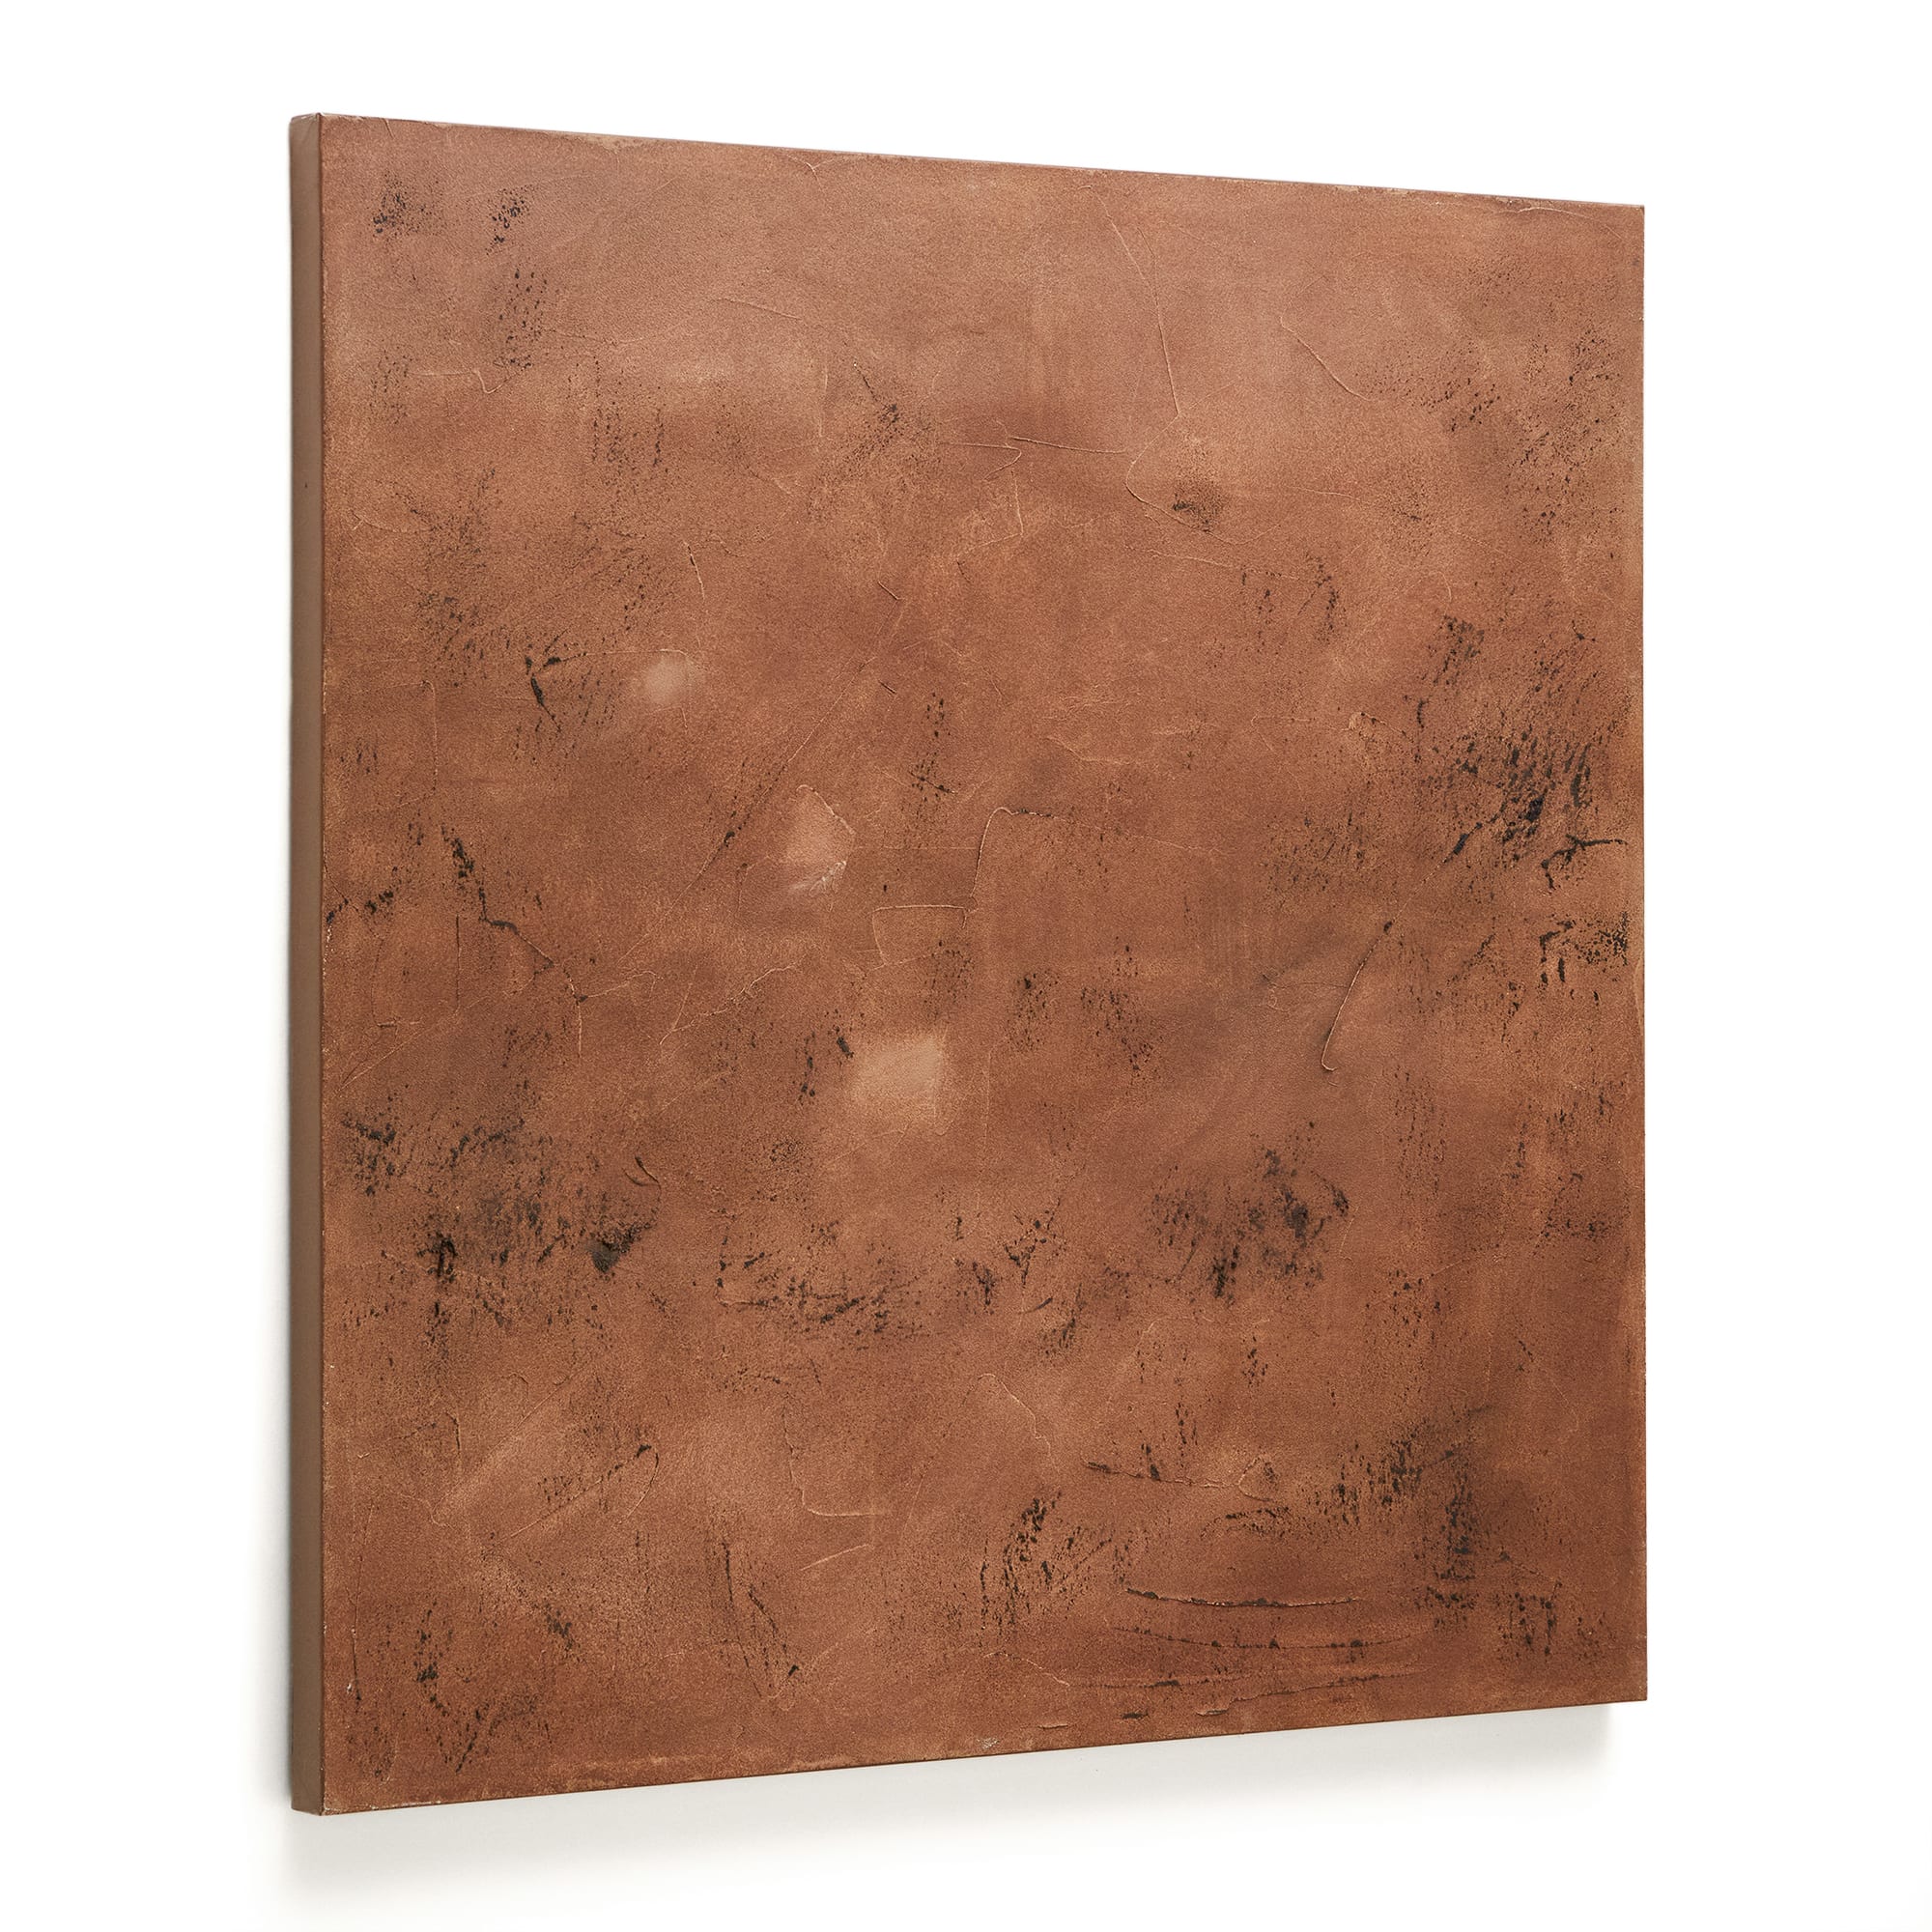 LAFORMA Sabira abstrakt billede, kvadratisk - brun/kobber lærred (100x100)